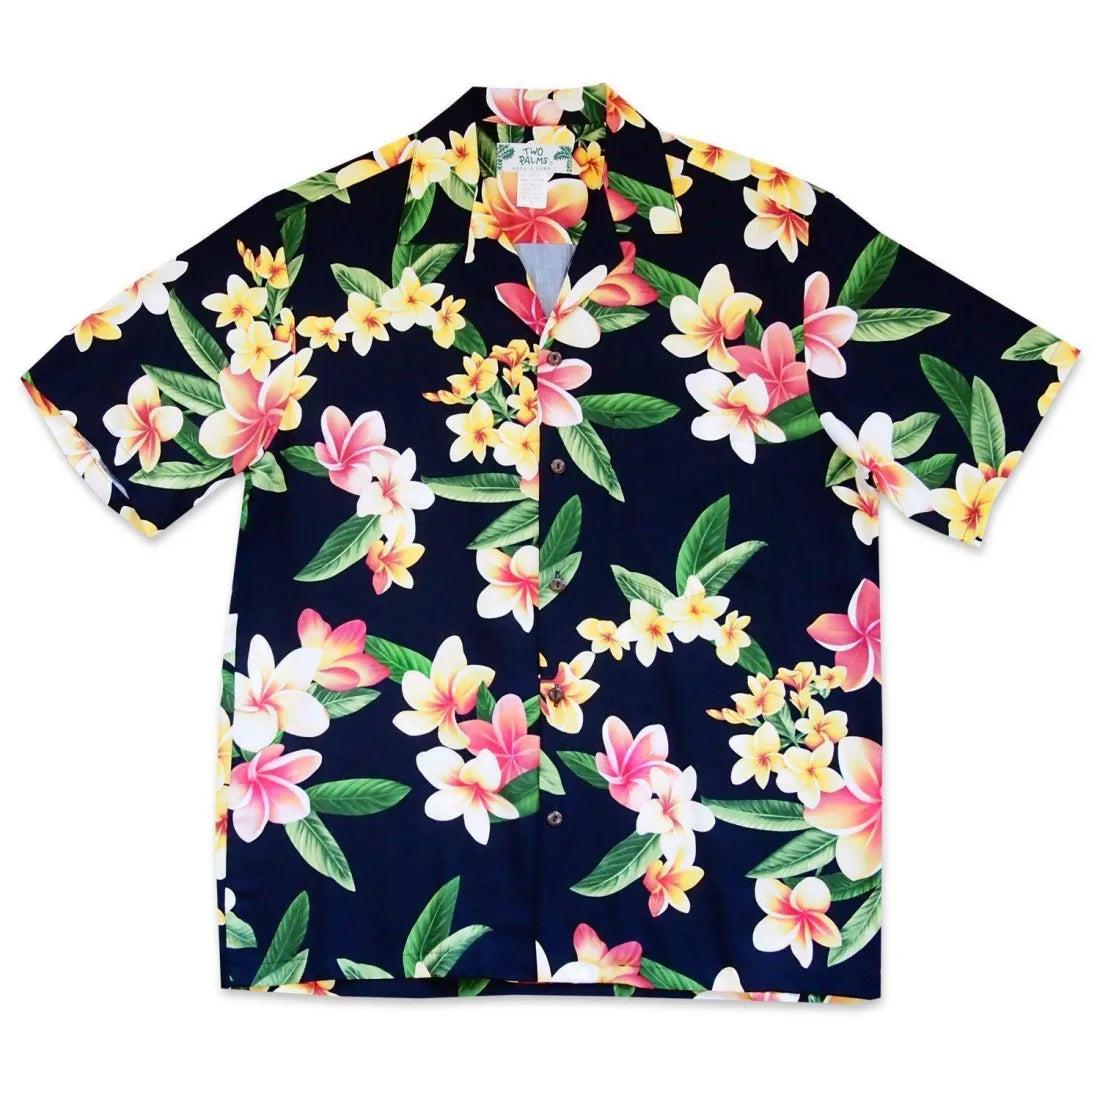 Pebble Black Hawaiian Rayon Shirt - Made In Hawaii